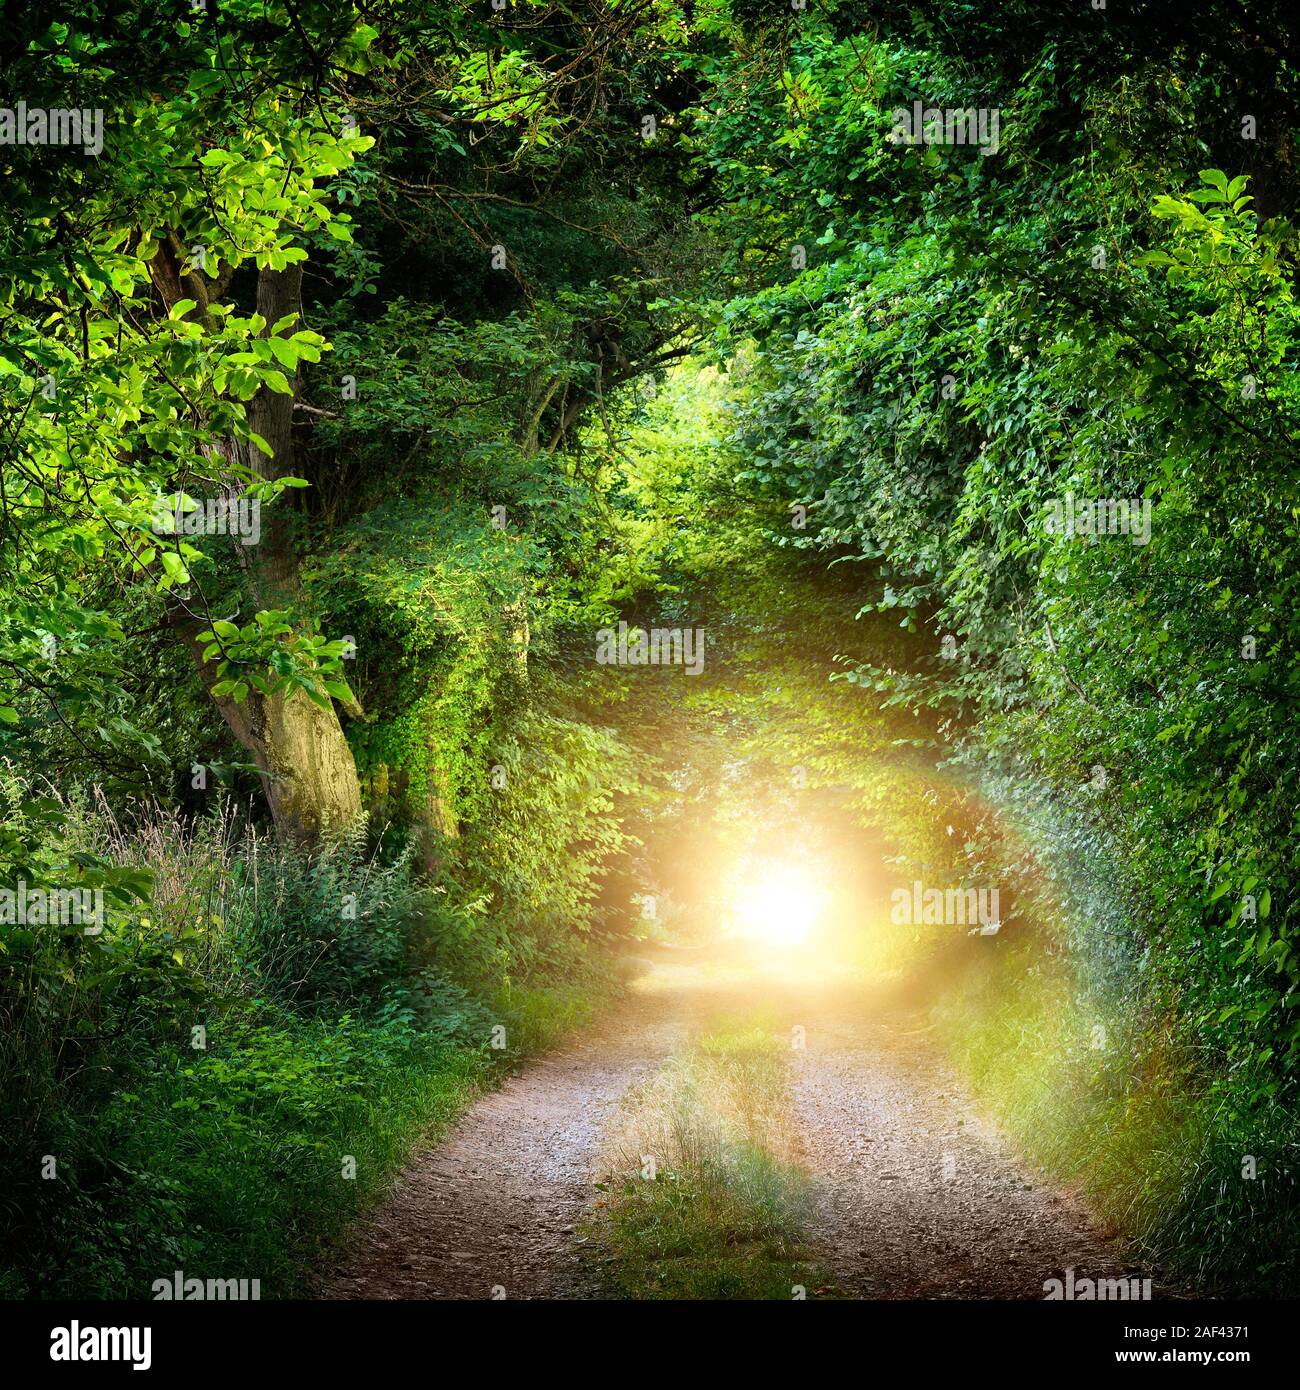 Paesaggio di fantasia con un green tunnel di alberi illuminati su una strada forestale che conduce a una misteriosa luce. Illuminata luminosamente outdoor night shot. Foto Stock